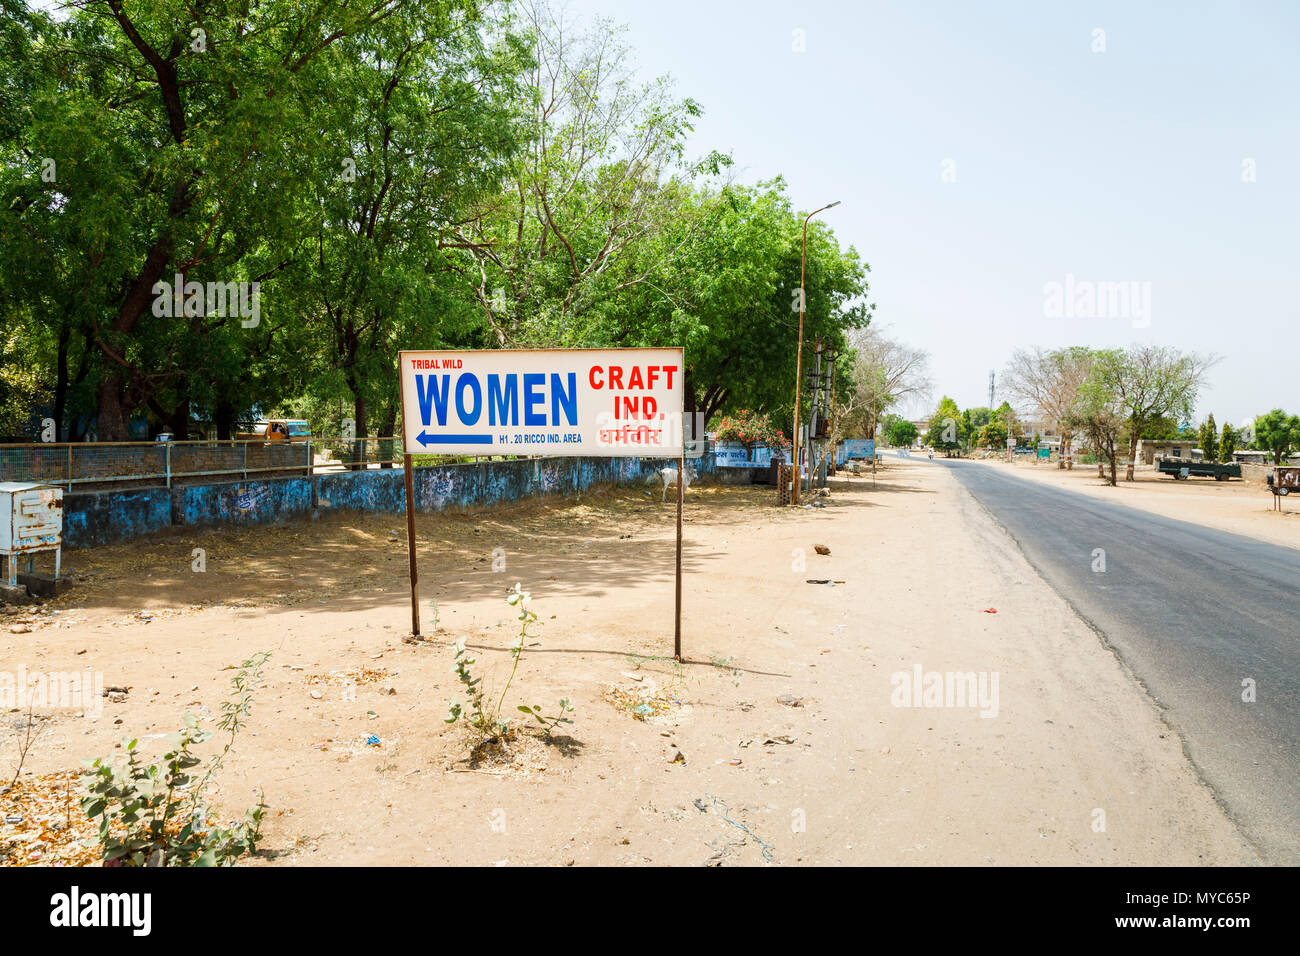 Am Straßenrand Werbung sign Tribal Wilde Frauen Handwerk, Kunsthandwerk, Sawai Madhopur Stadt, in der Nähe vom Ranthambore Nationalpark, Rajasthan, Nordindien Stockfoto